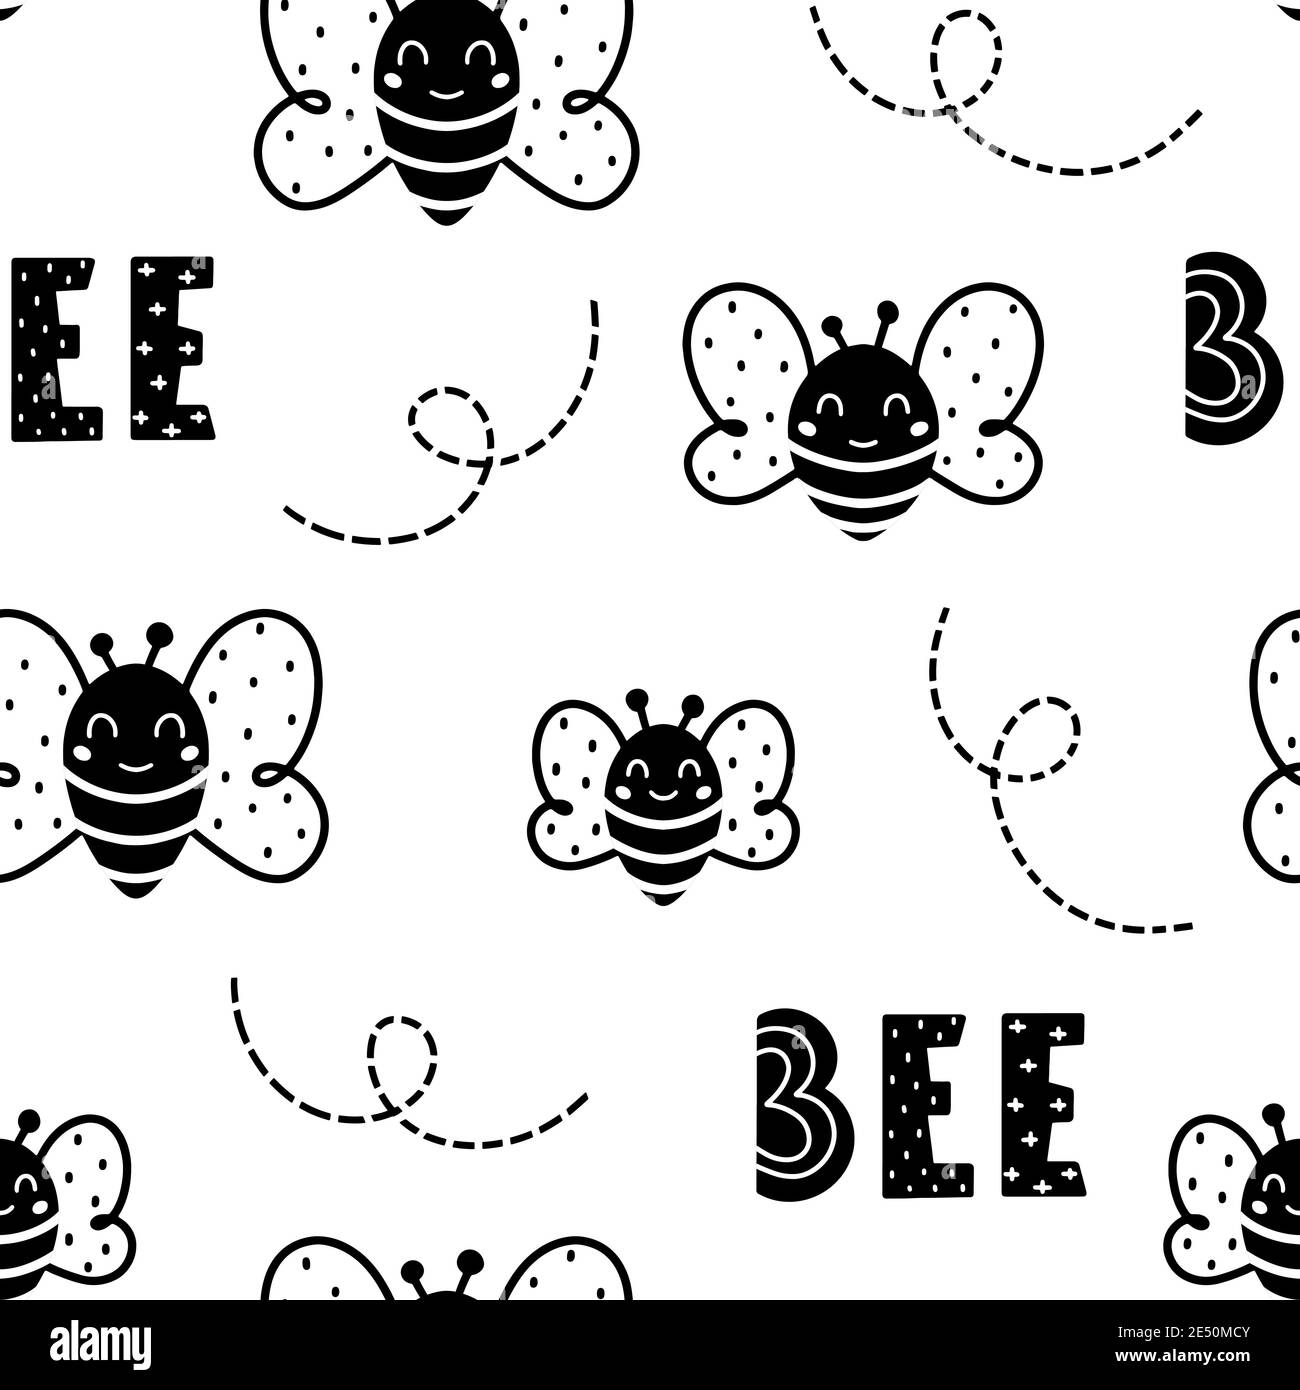 Motivo senza giunture monocolore con api nere e scritte isolate su sfondo bianco. Illustrazione vettoriale in stile scandinavo disegnata a mano. Illustrazione Vettoriale